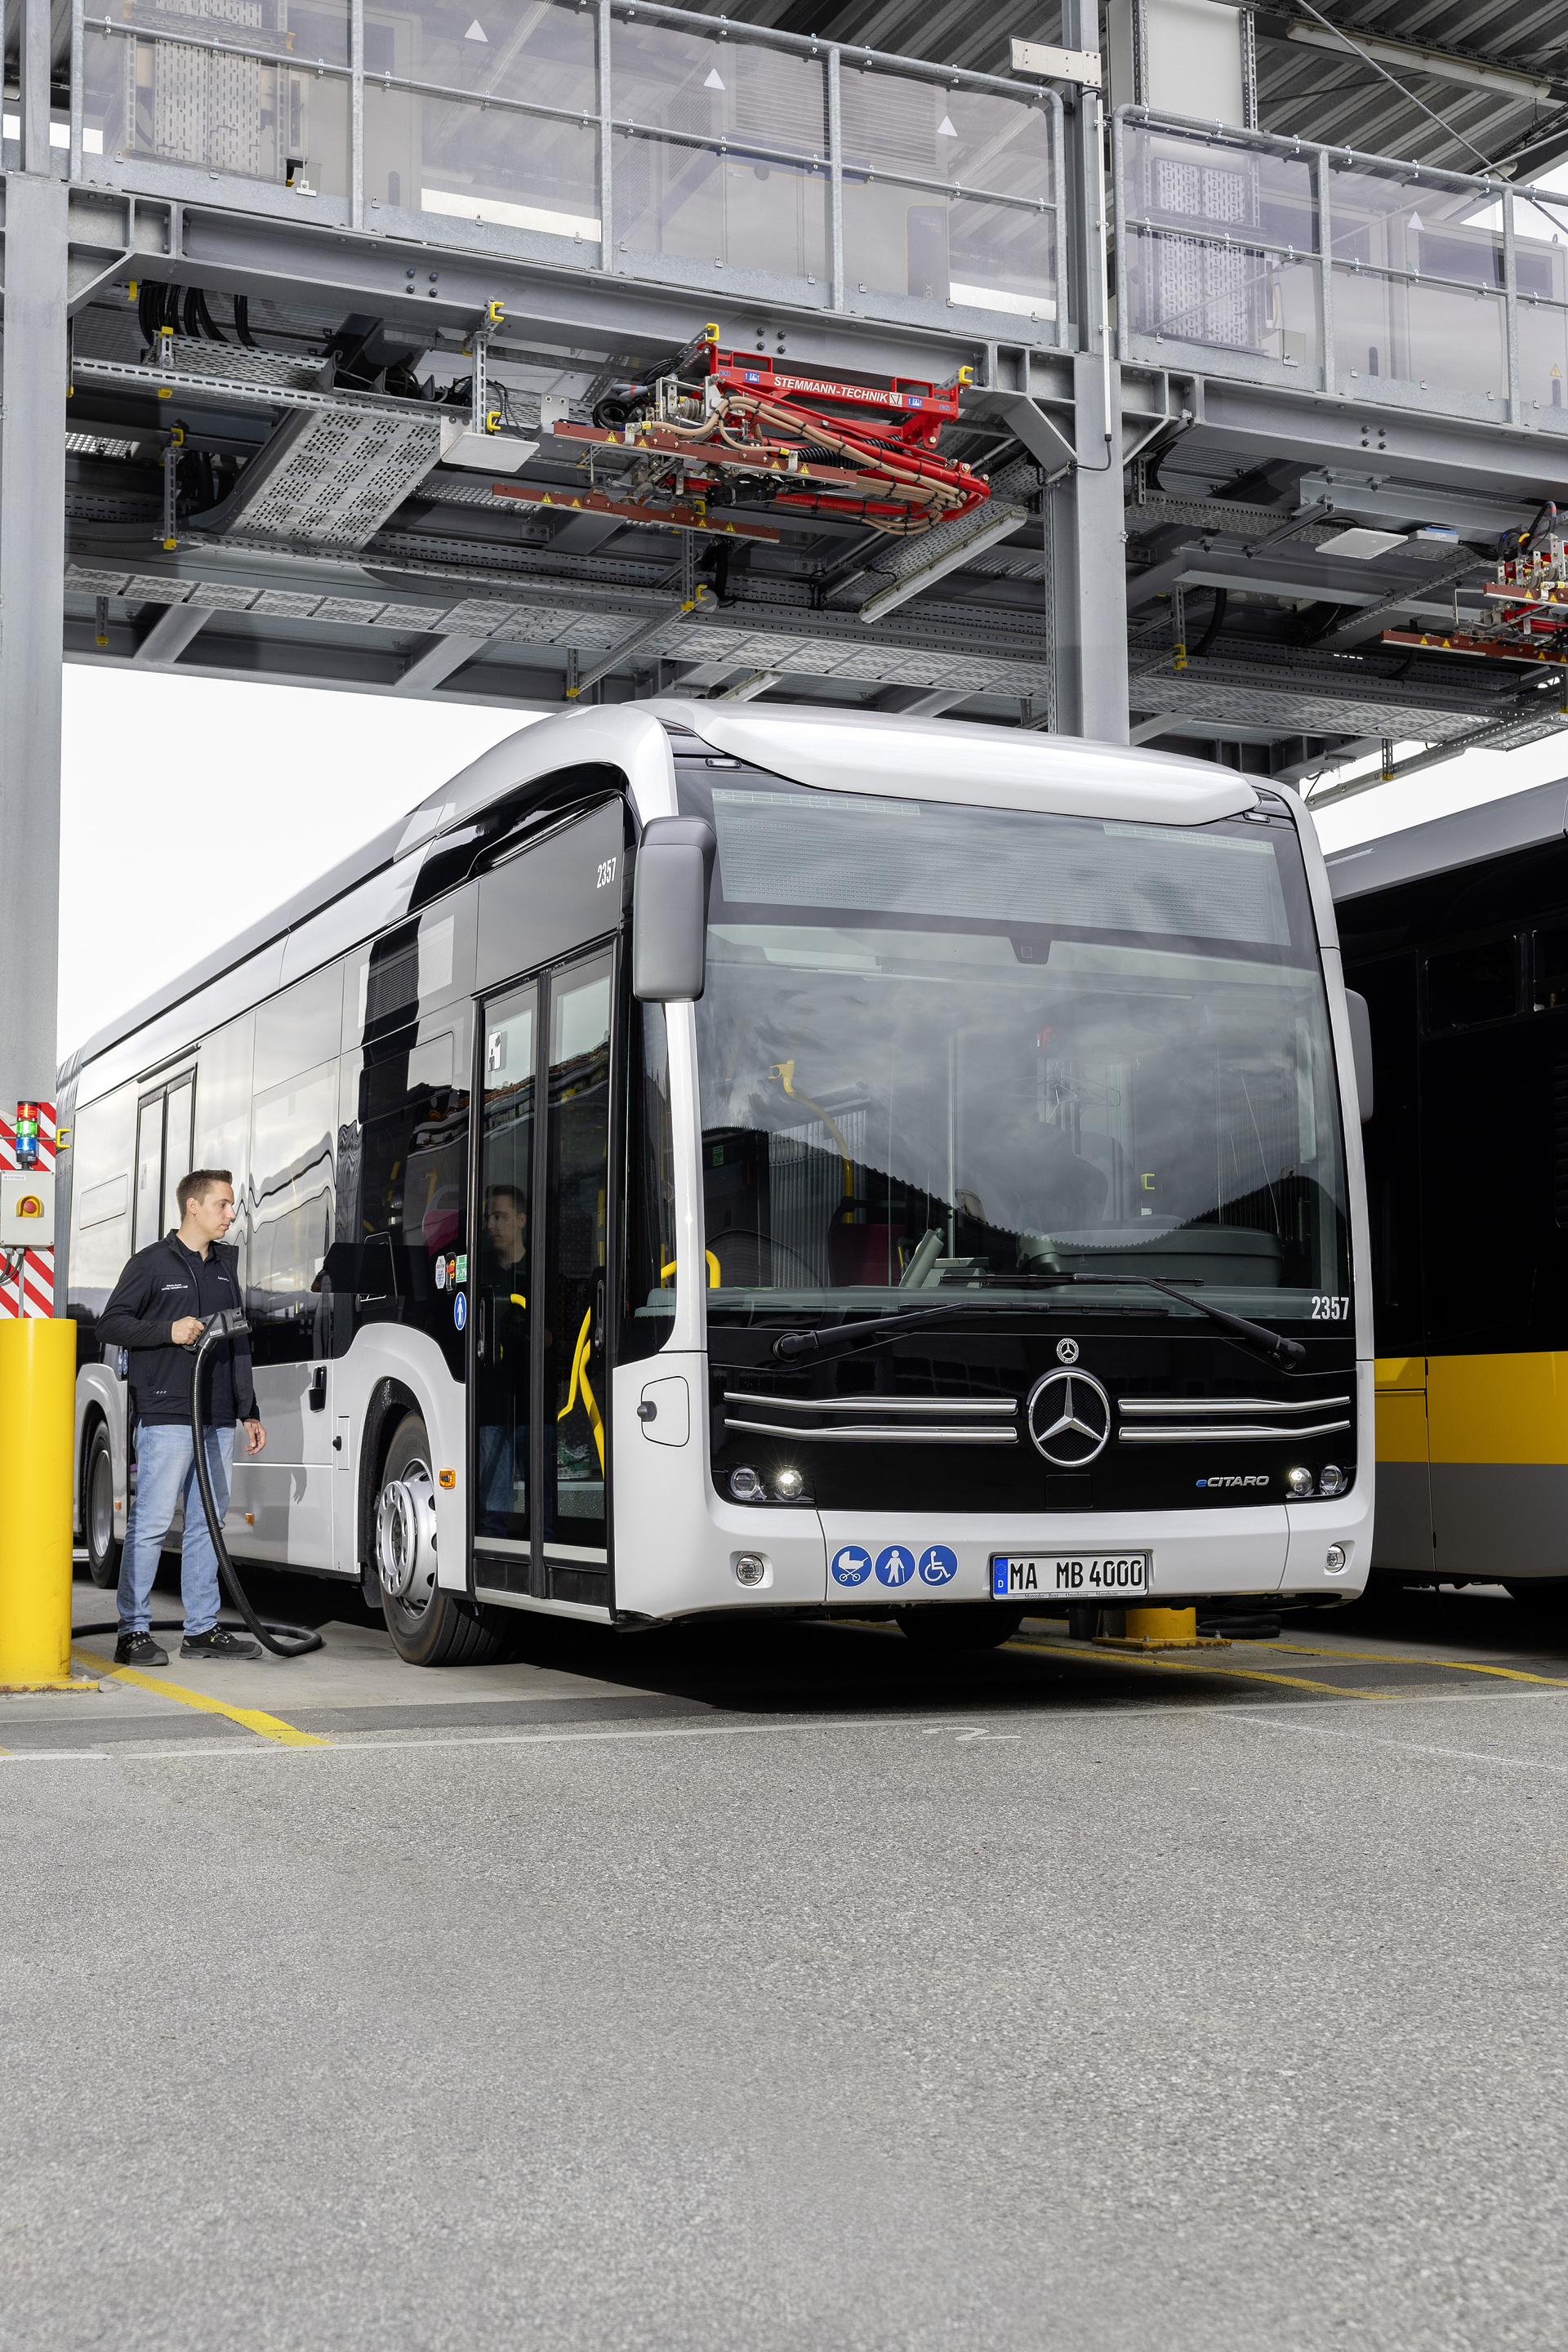 Electric Bus Champion 2024: Der vollelektrische Mercedes-Benz eCitaro gewinnt zum zweiten Mal in Folge renommierten Elektrobus-Vergleichstest